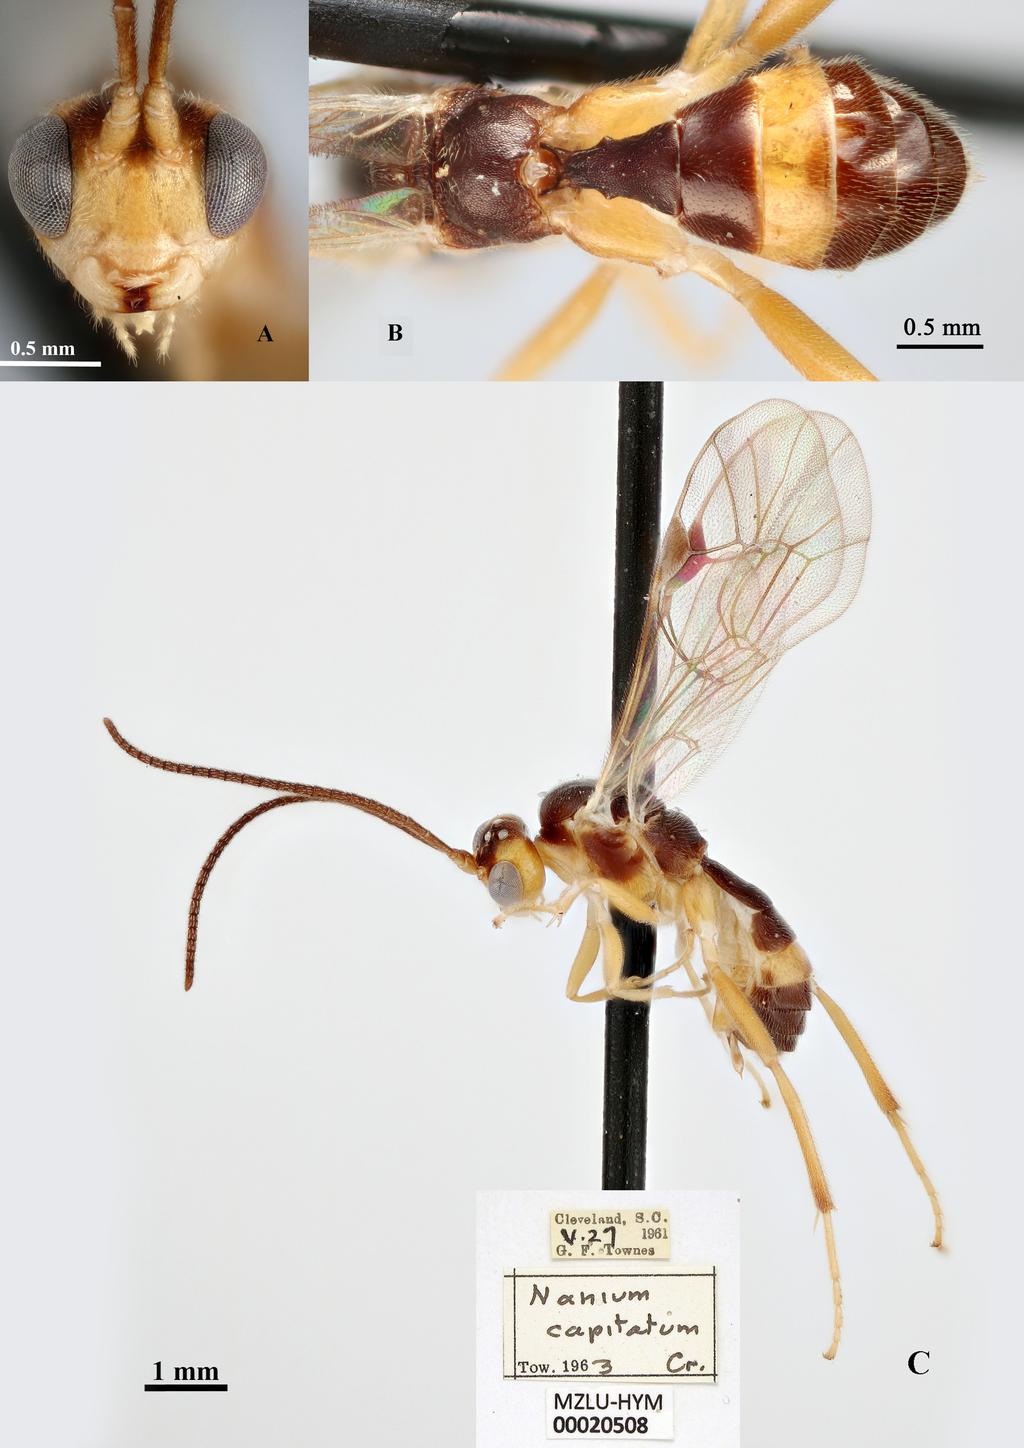 RESHCHIKOV A. et al., Neotropical Nanium (Hymenoptera: Ichneumonidae) Fig. 3.